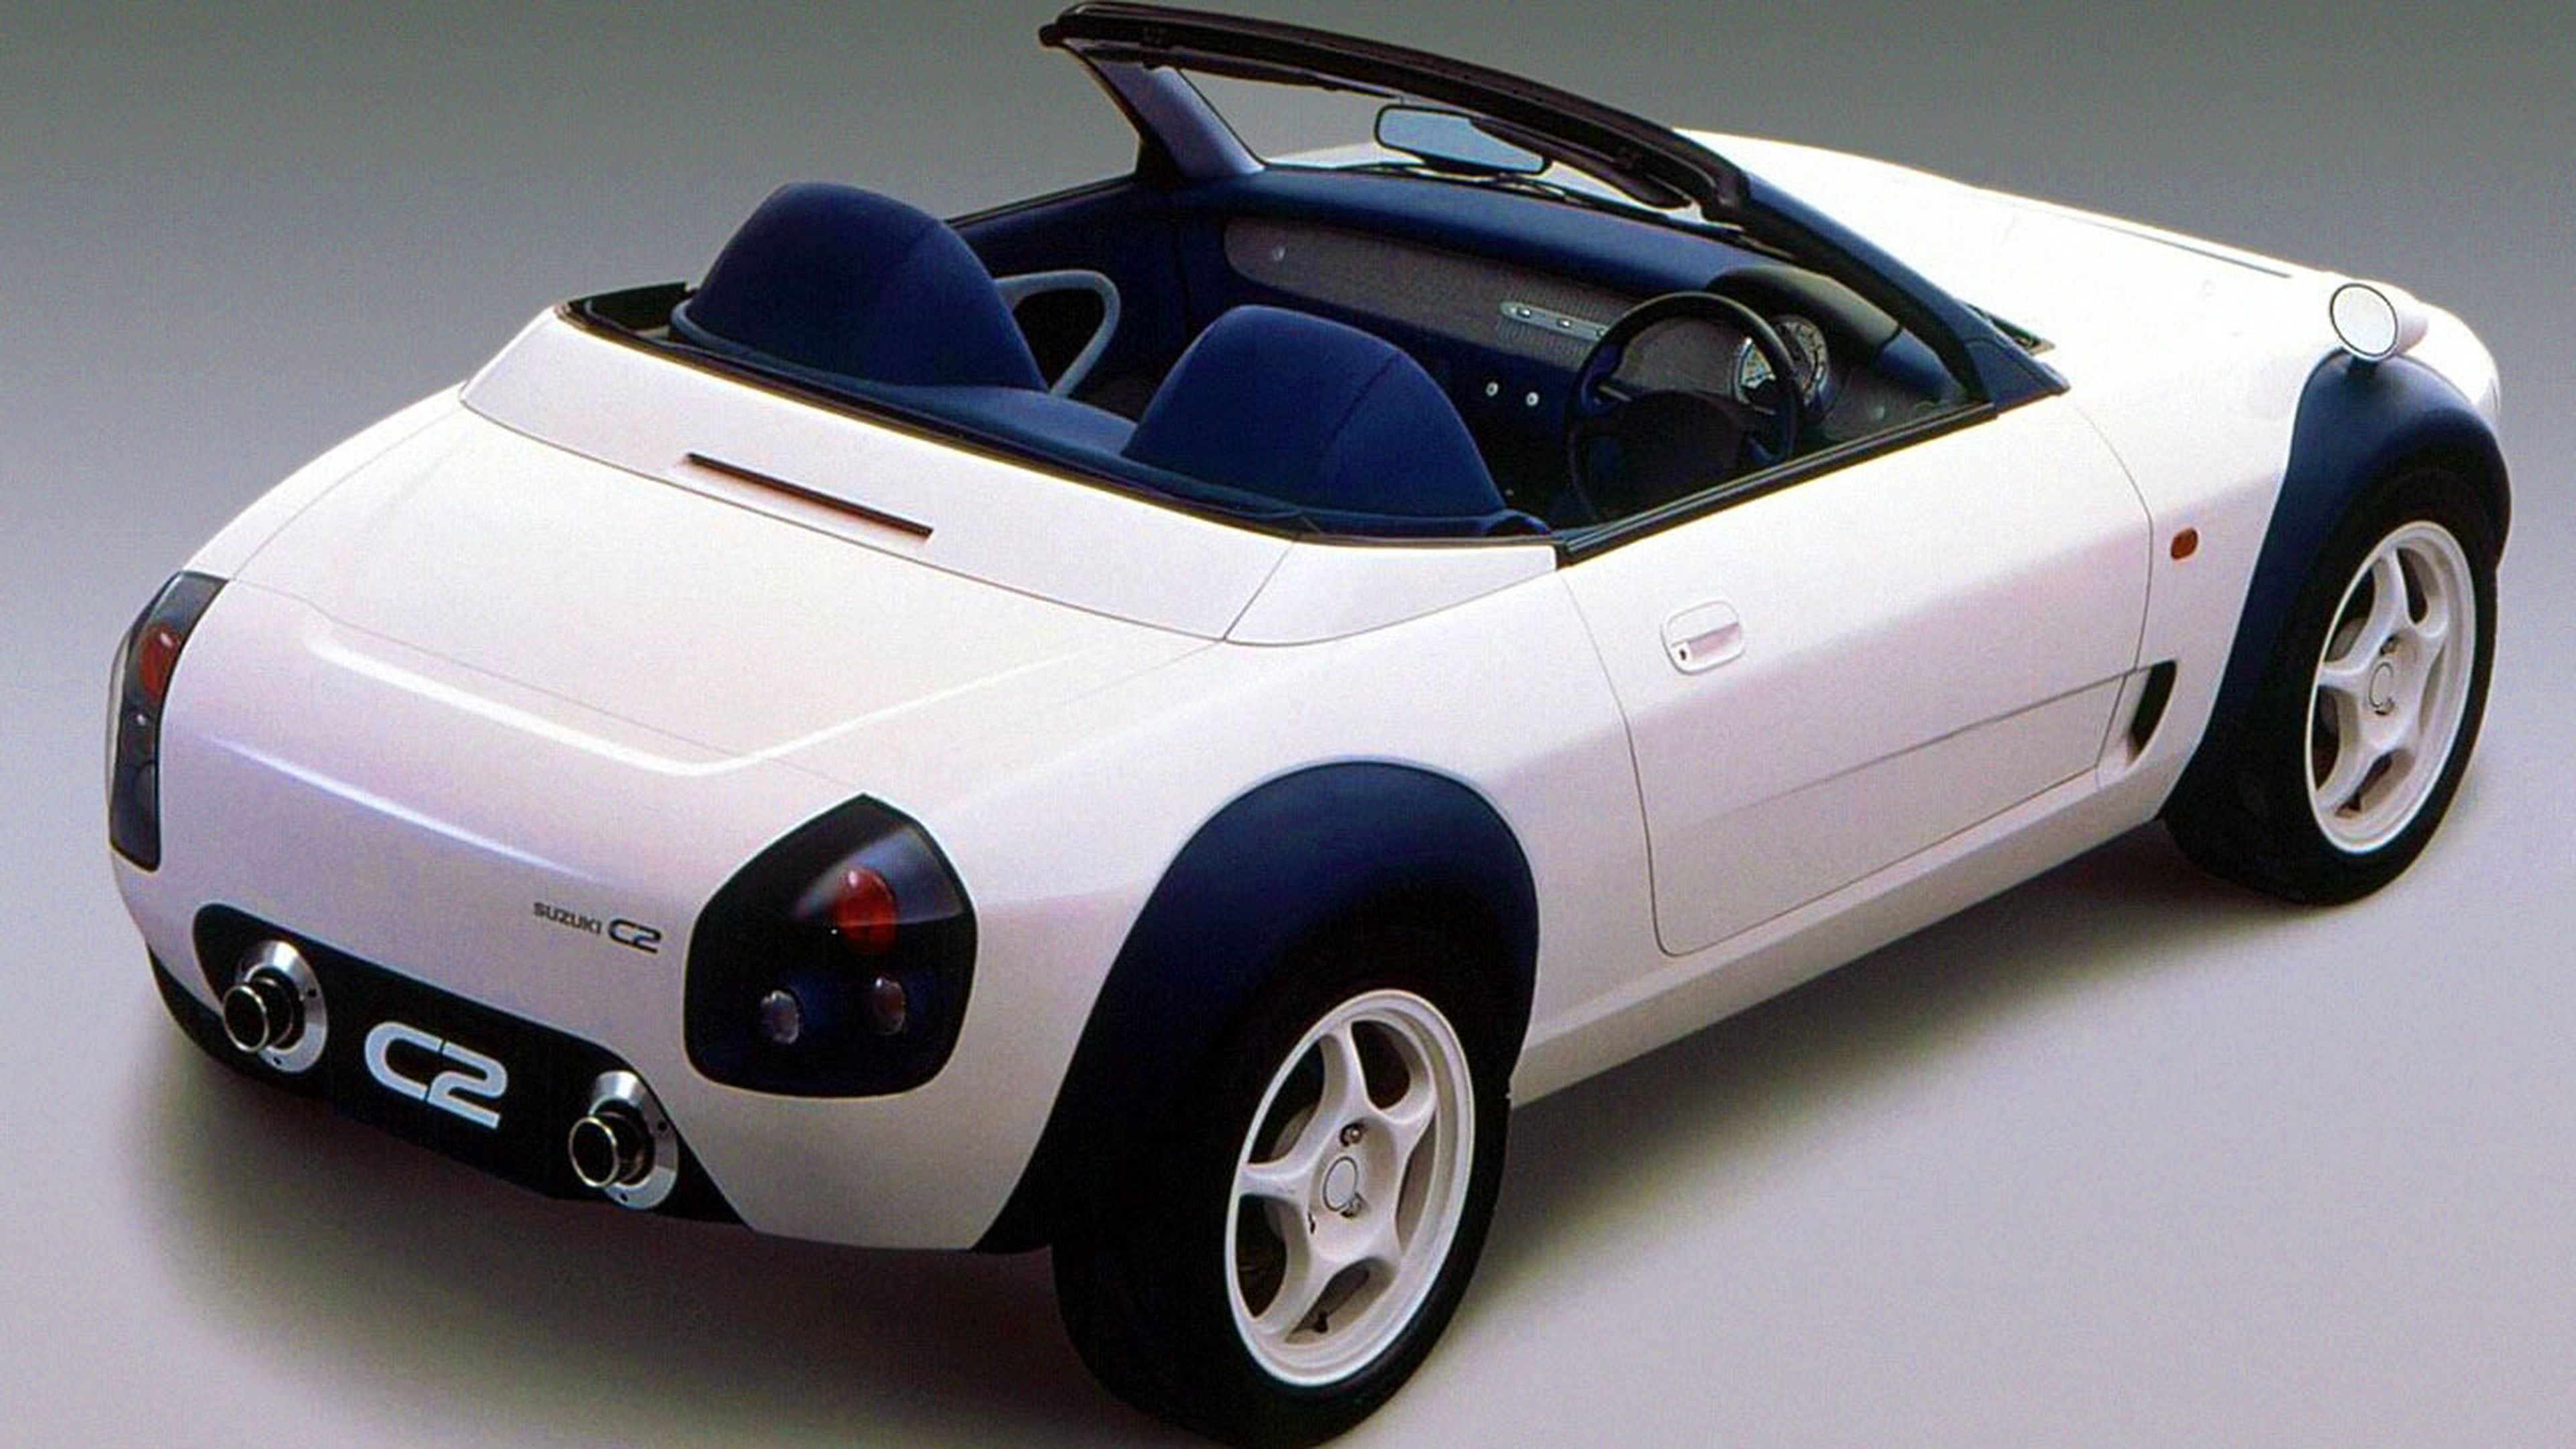 Suzuki C2.